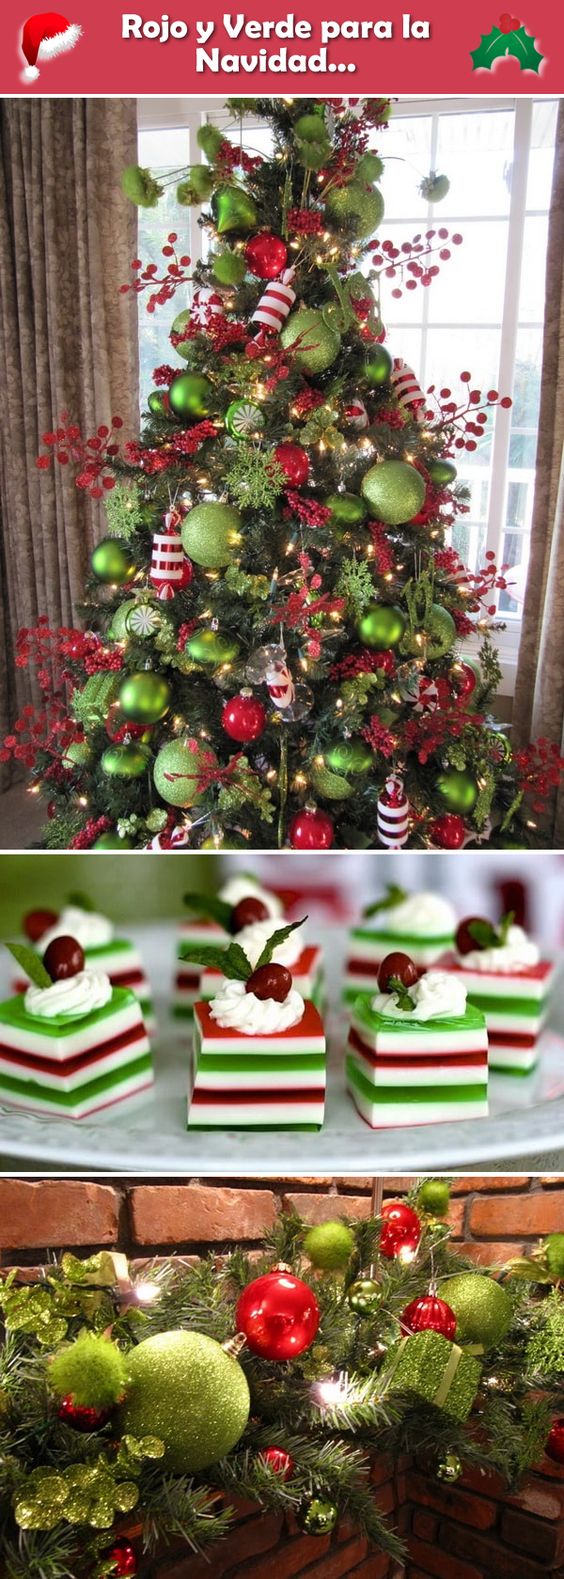 decoracion de navidad color rojo y verde 